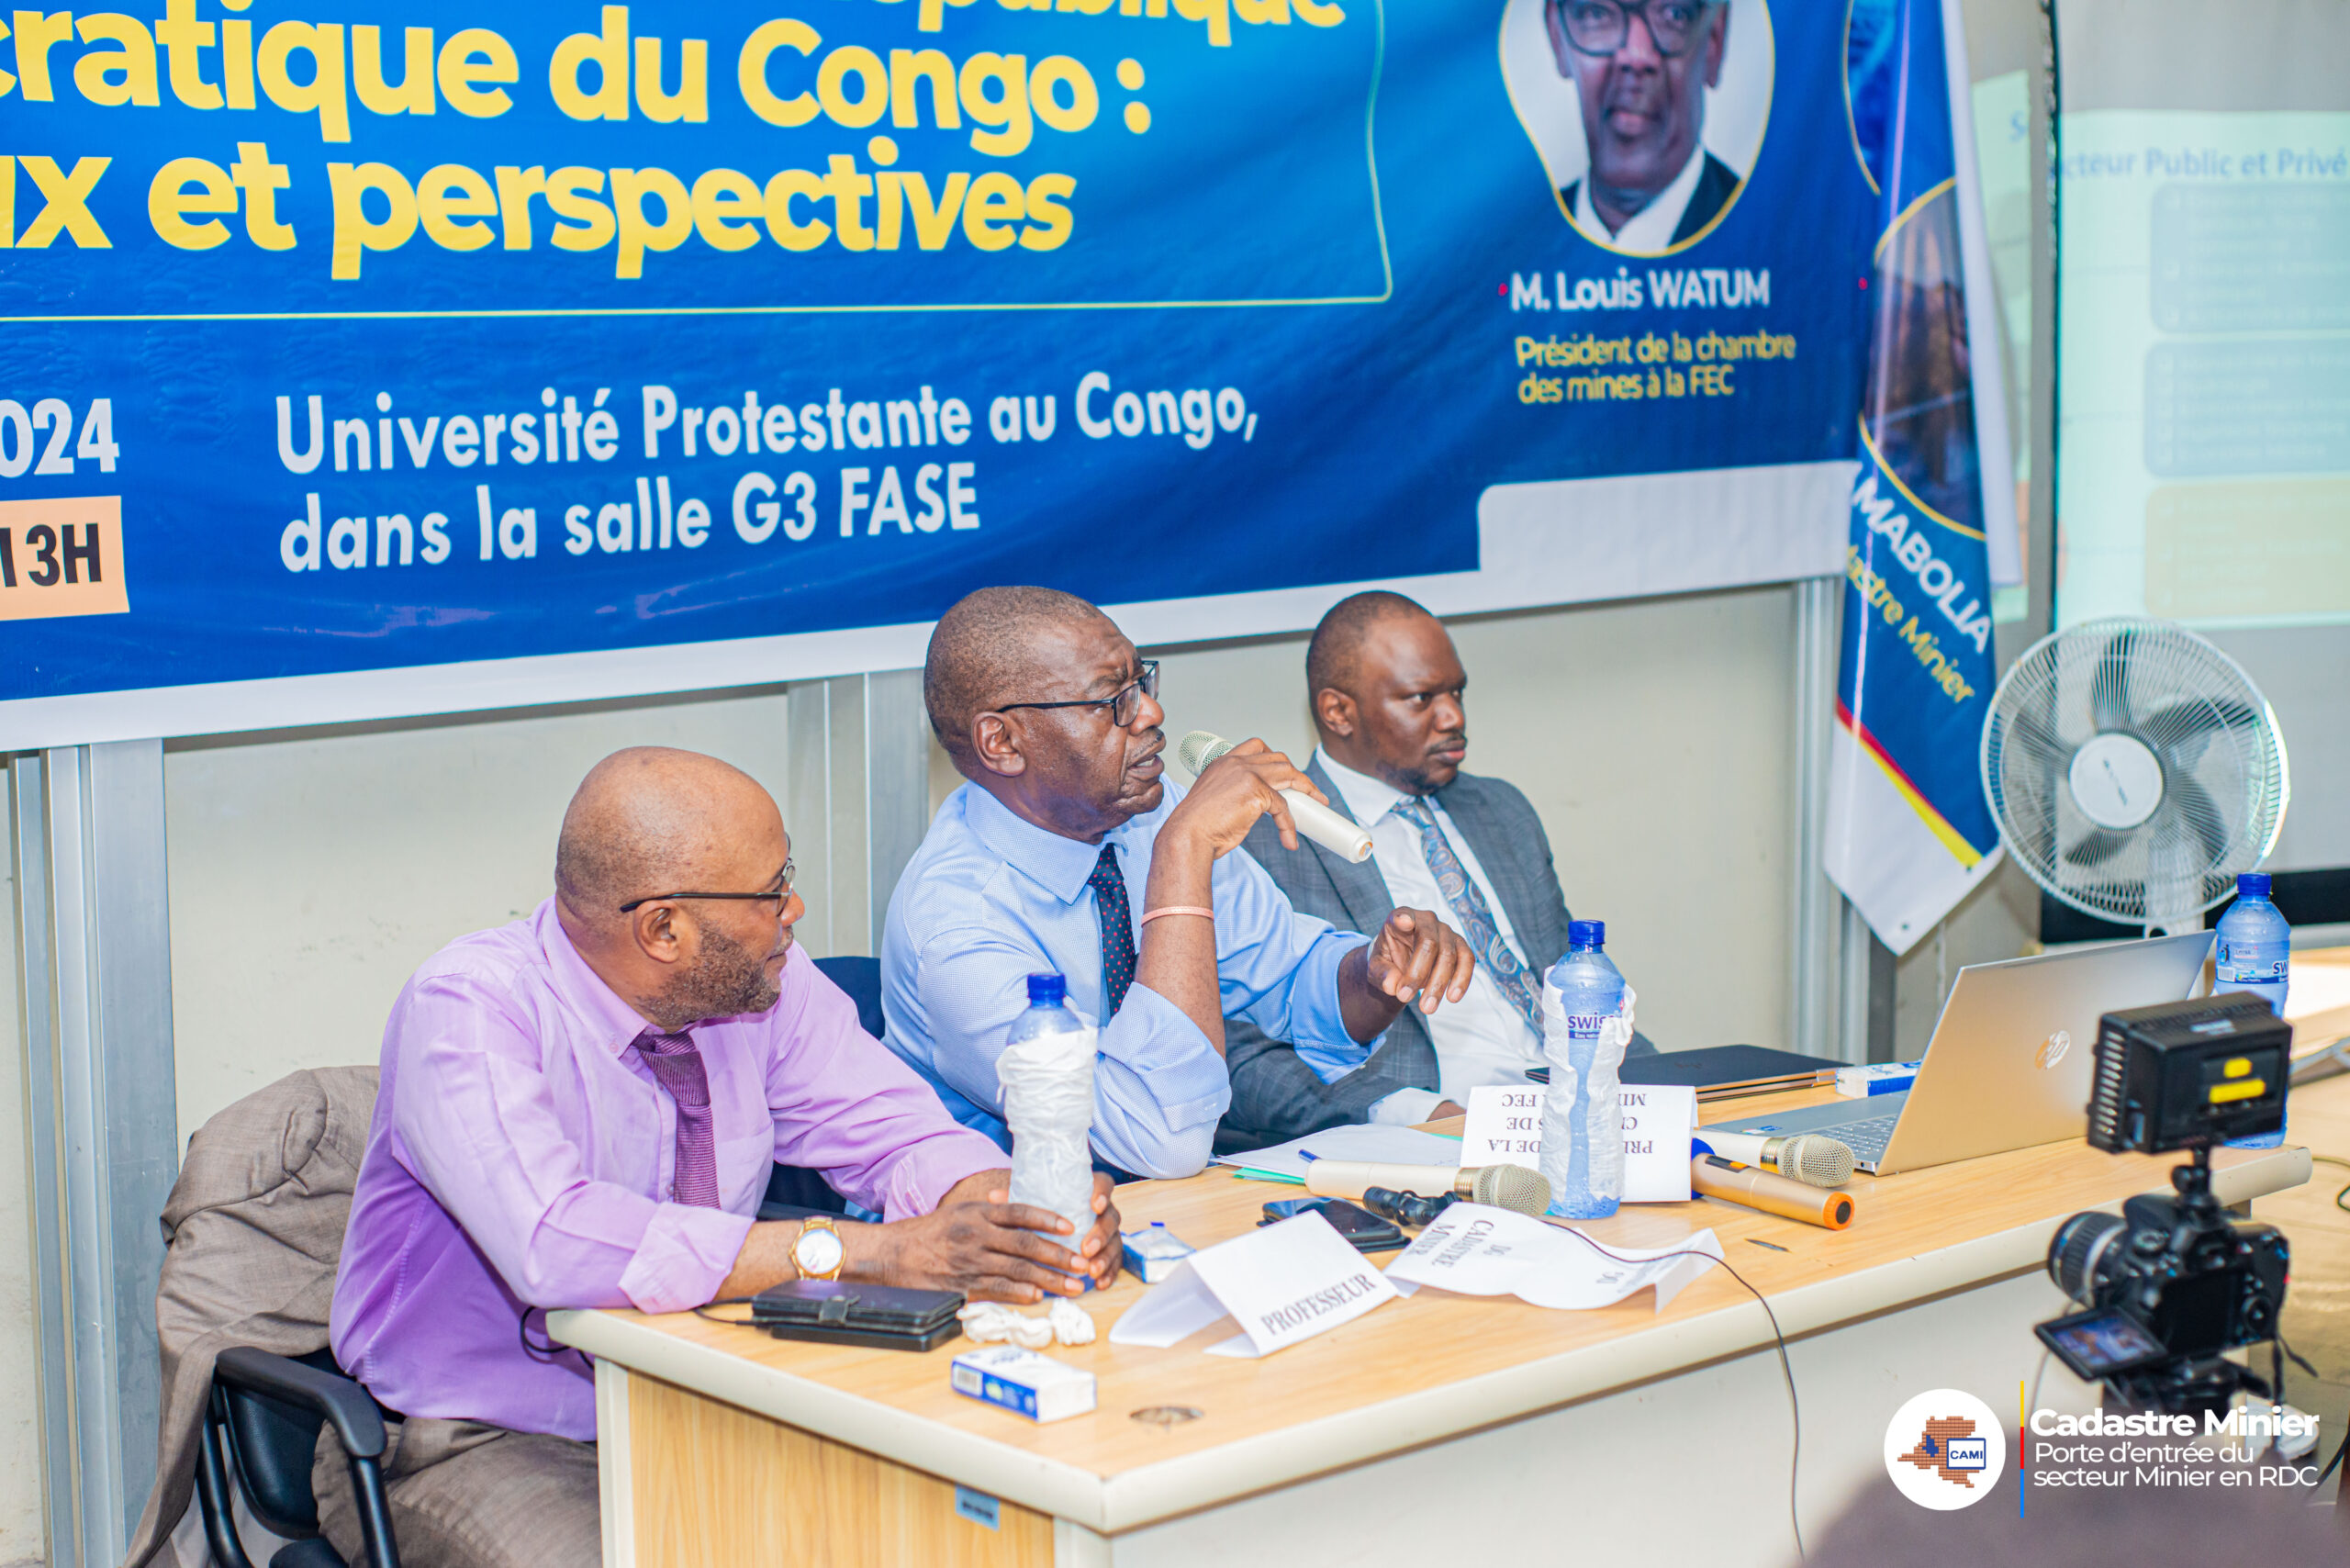 Lire la suite à propos de l’article Le Cadastre Minier en face des étudiants de l’Université Protestante du Congo à Kinshasa